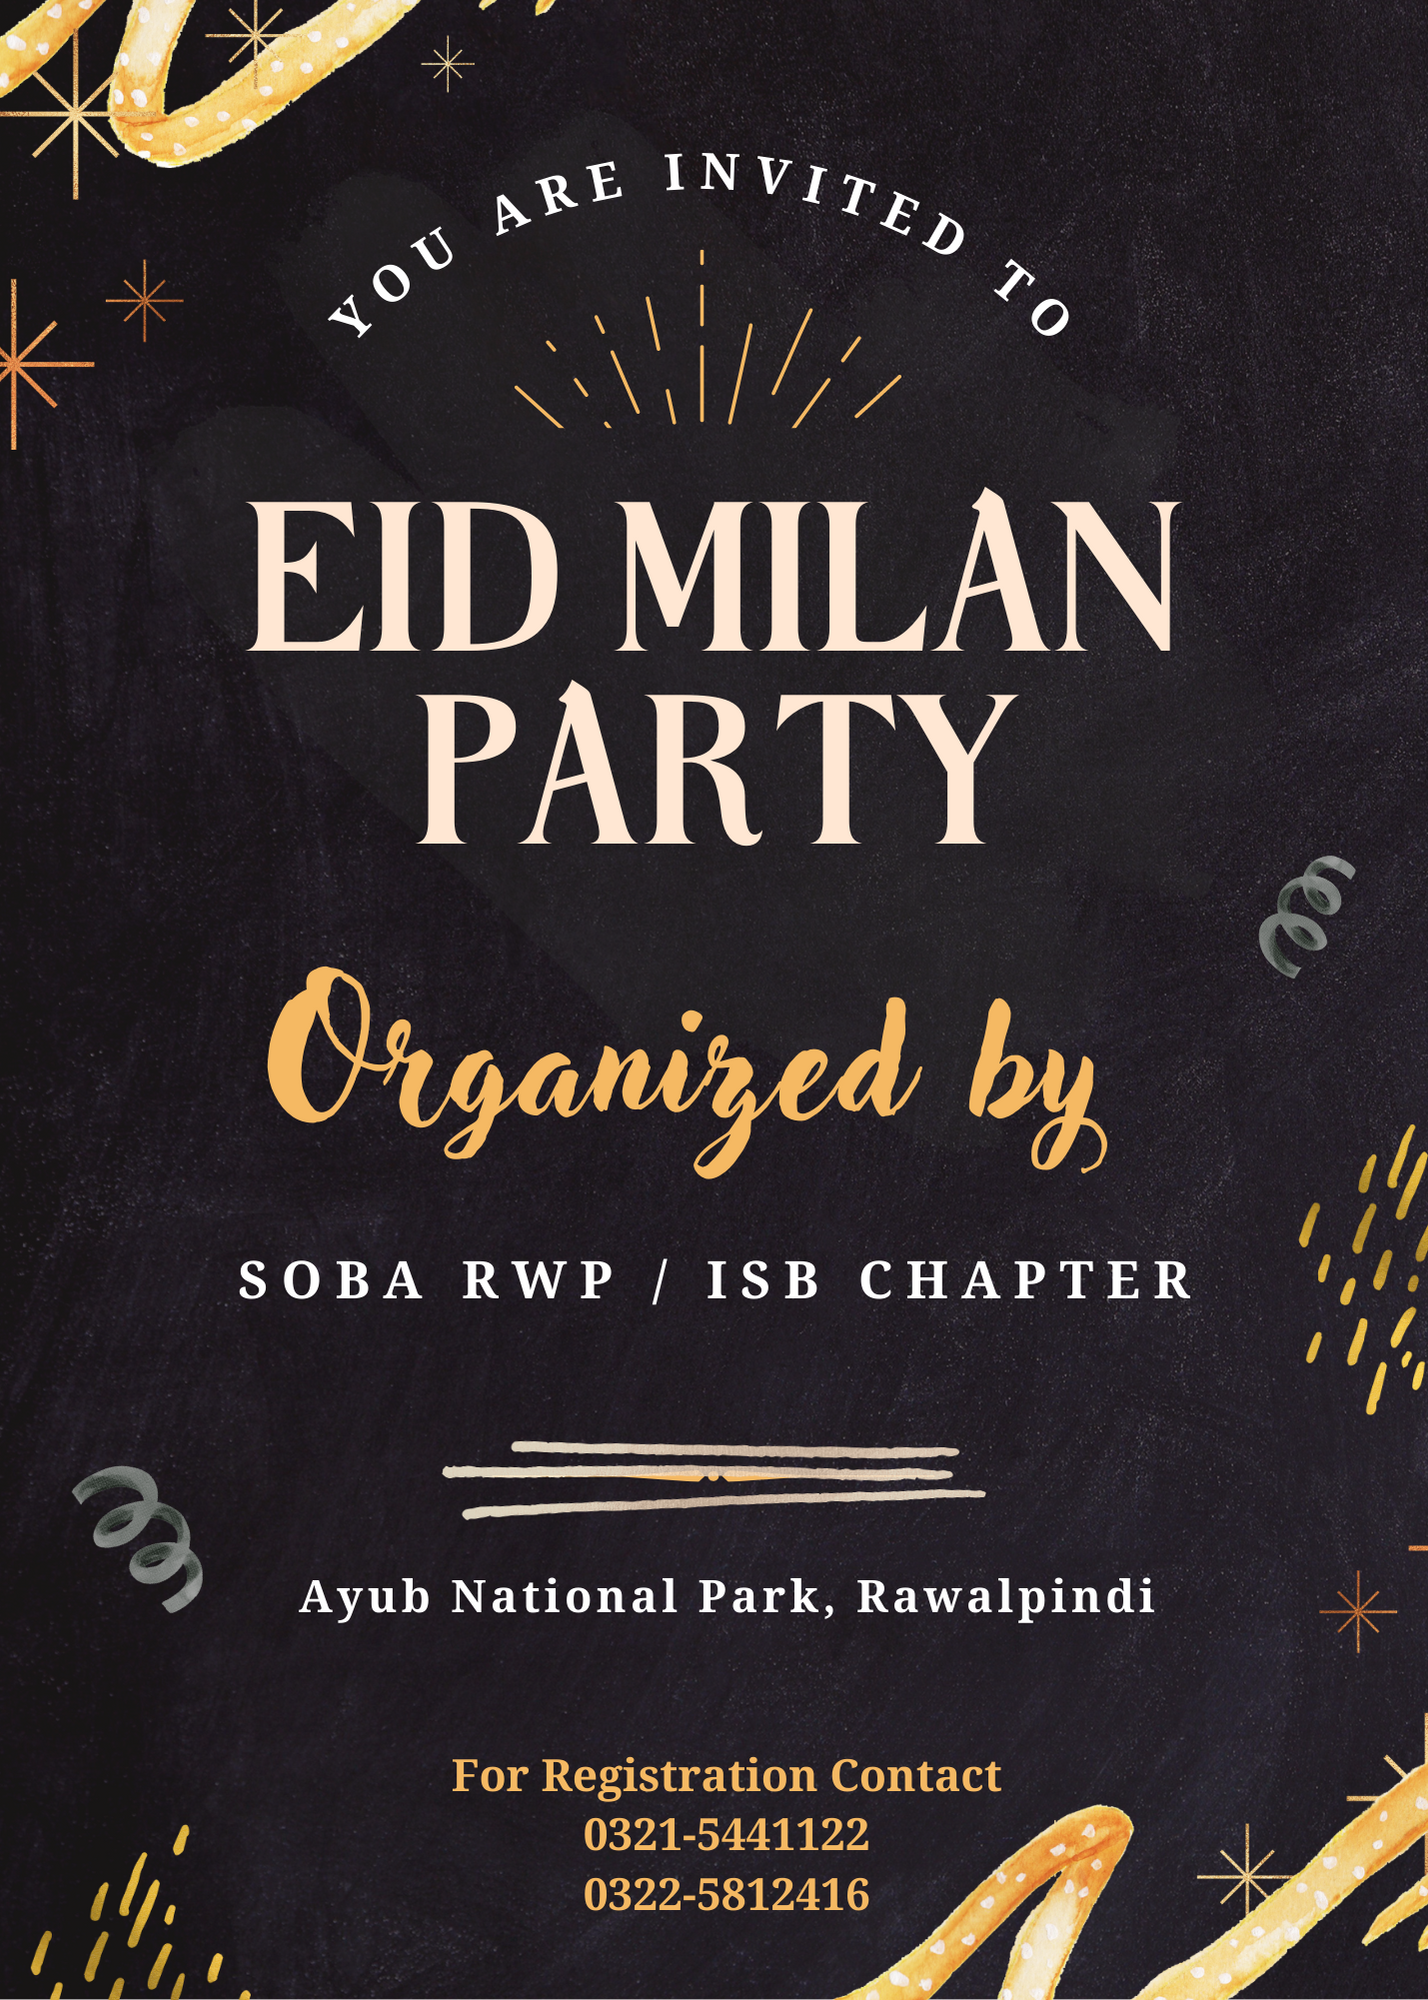 Picnic / Eid Milan Party at Ayub Park Rawalpindi in the First Week of May 2023